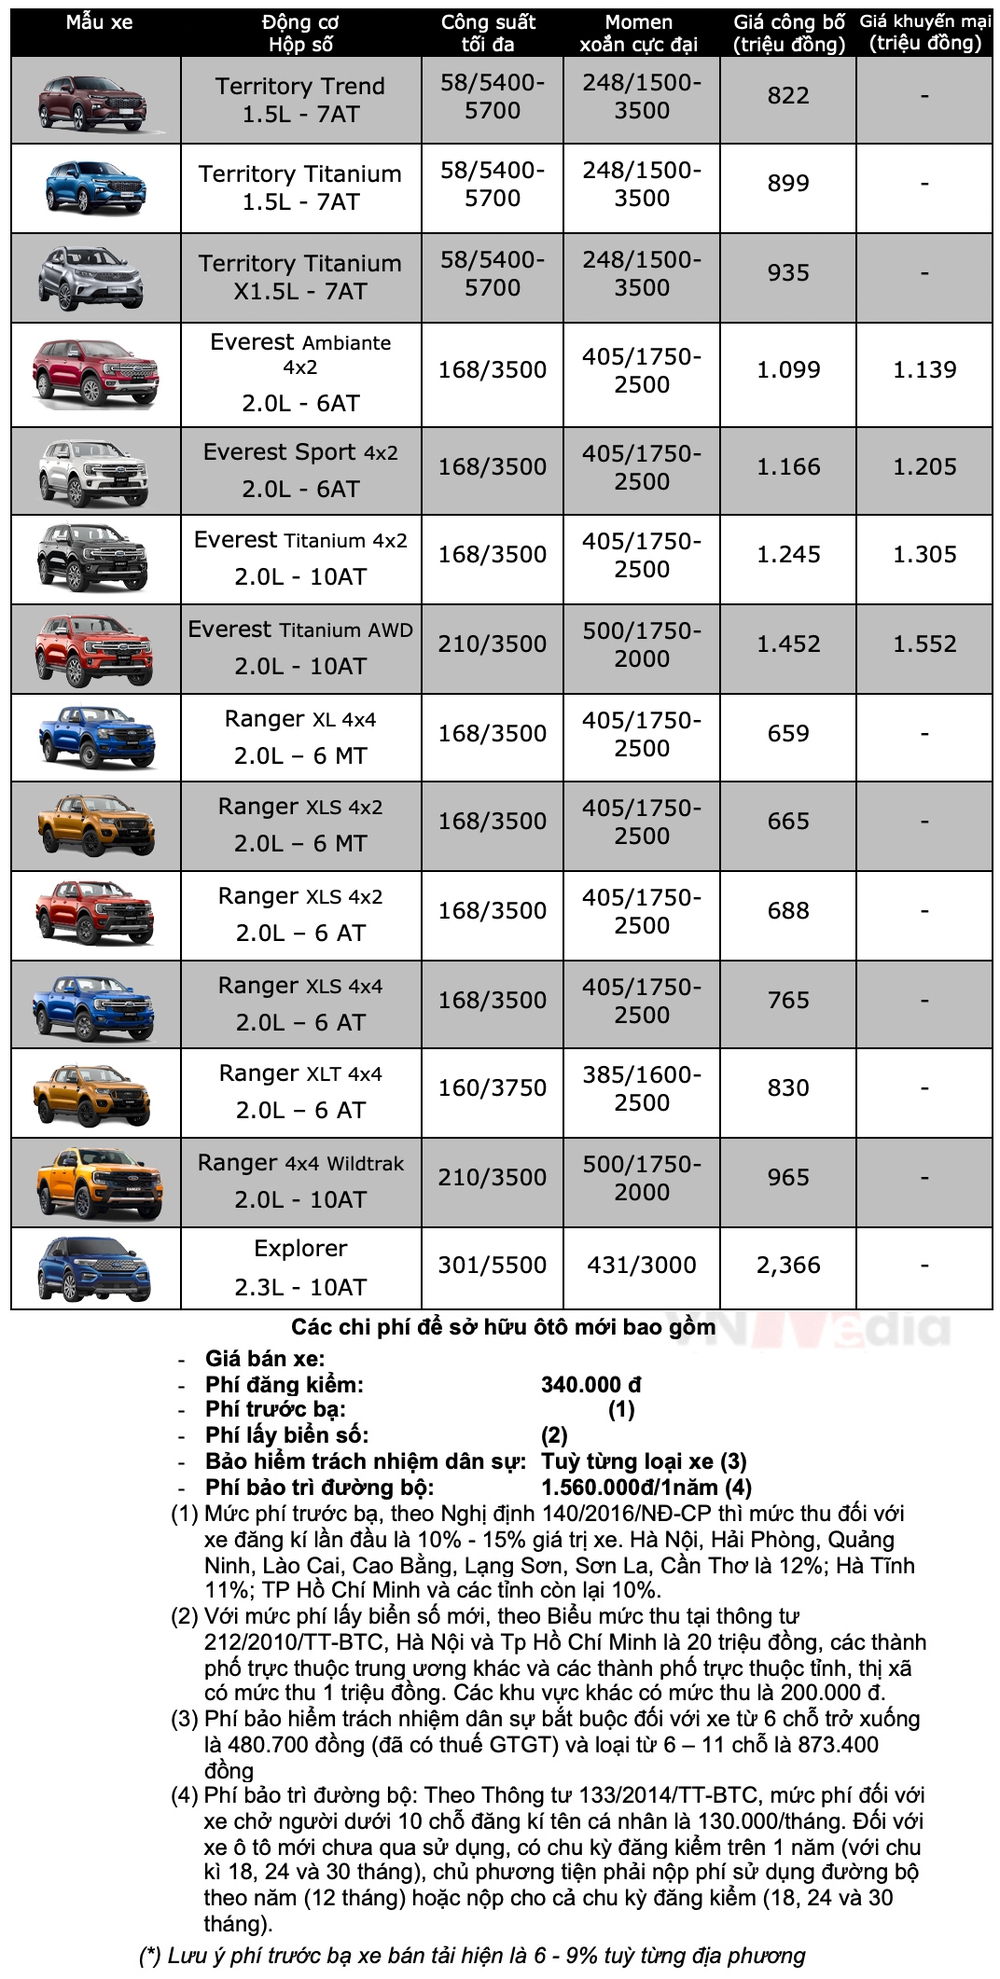 Bảng giá xe Ford tháng 12: Ford Territory phiên bản Trend được giảm giá - Ảnh 2.